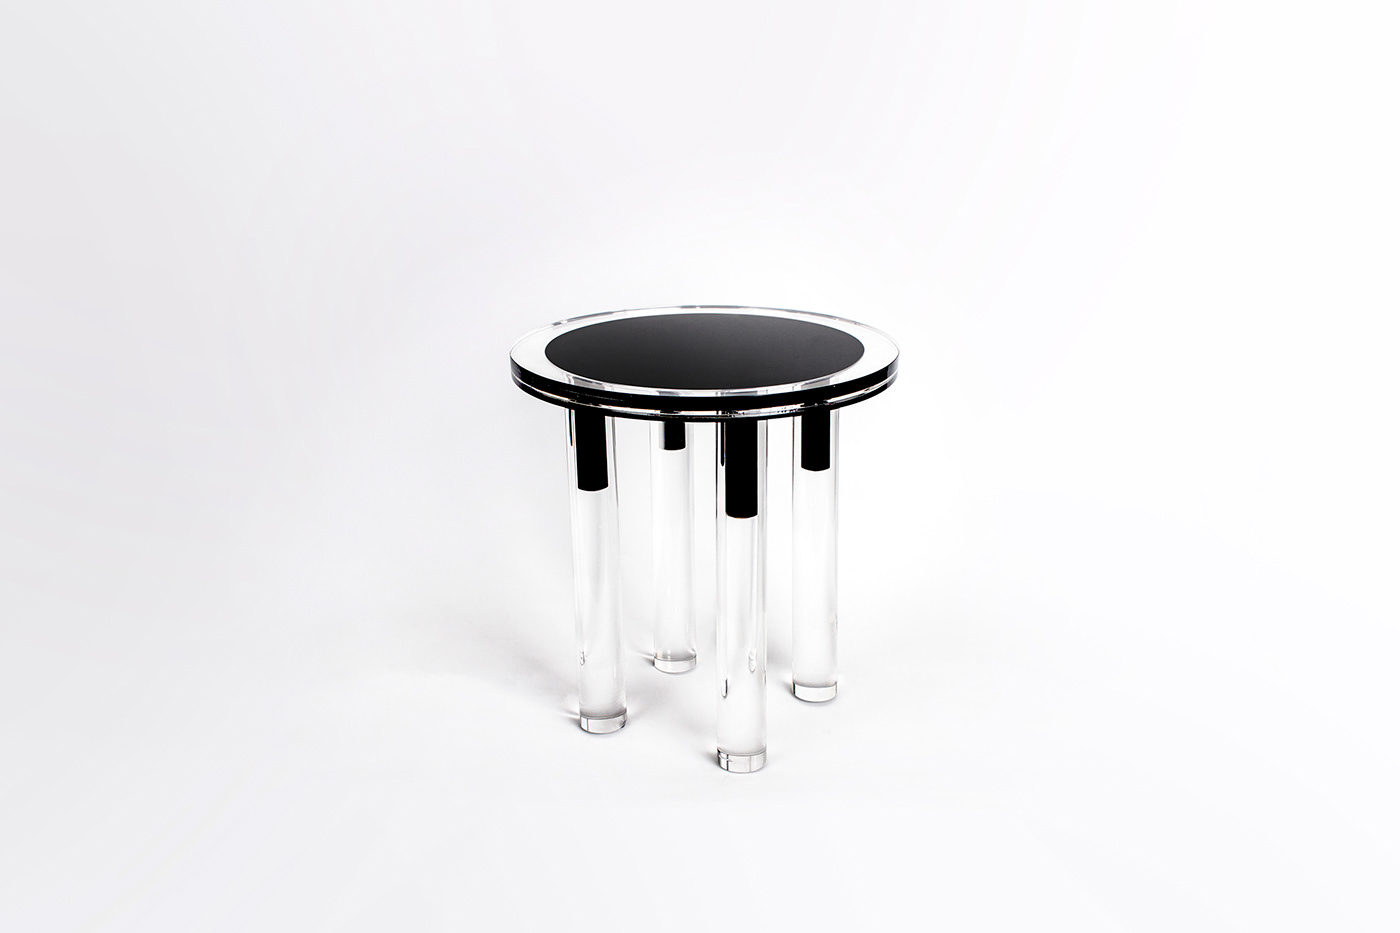 furniture design  Stool Design product design  structure concept design art direction  Side table design